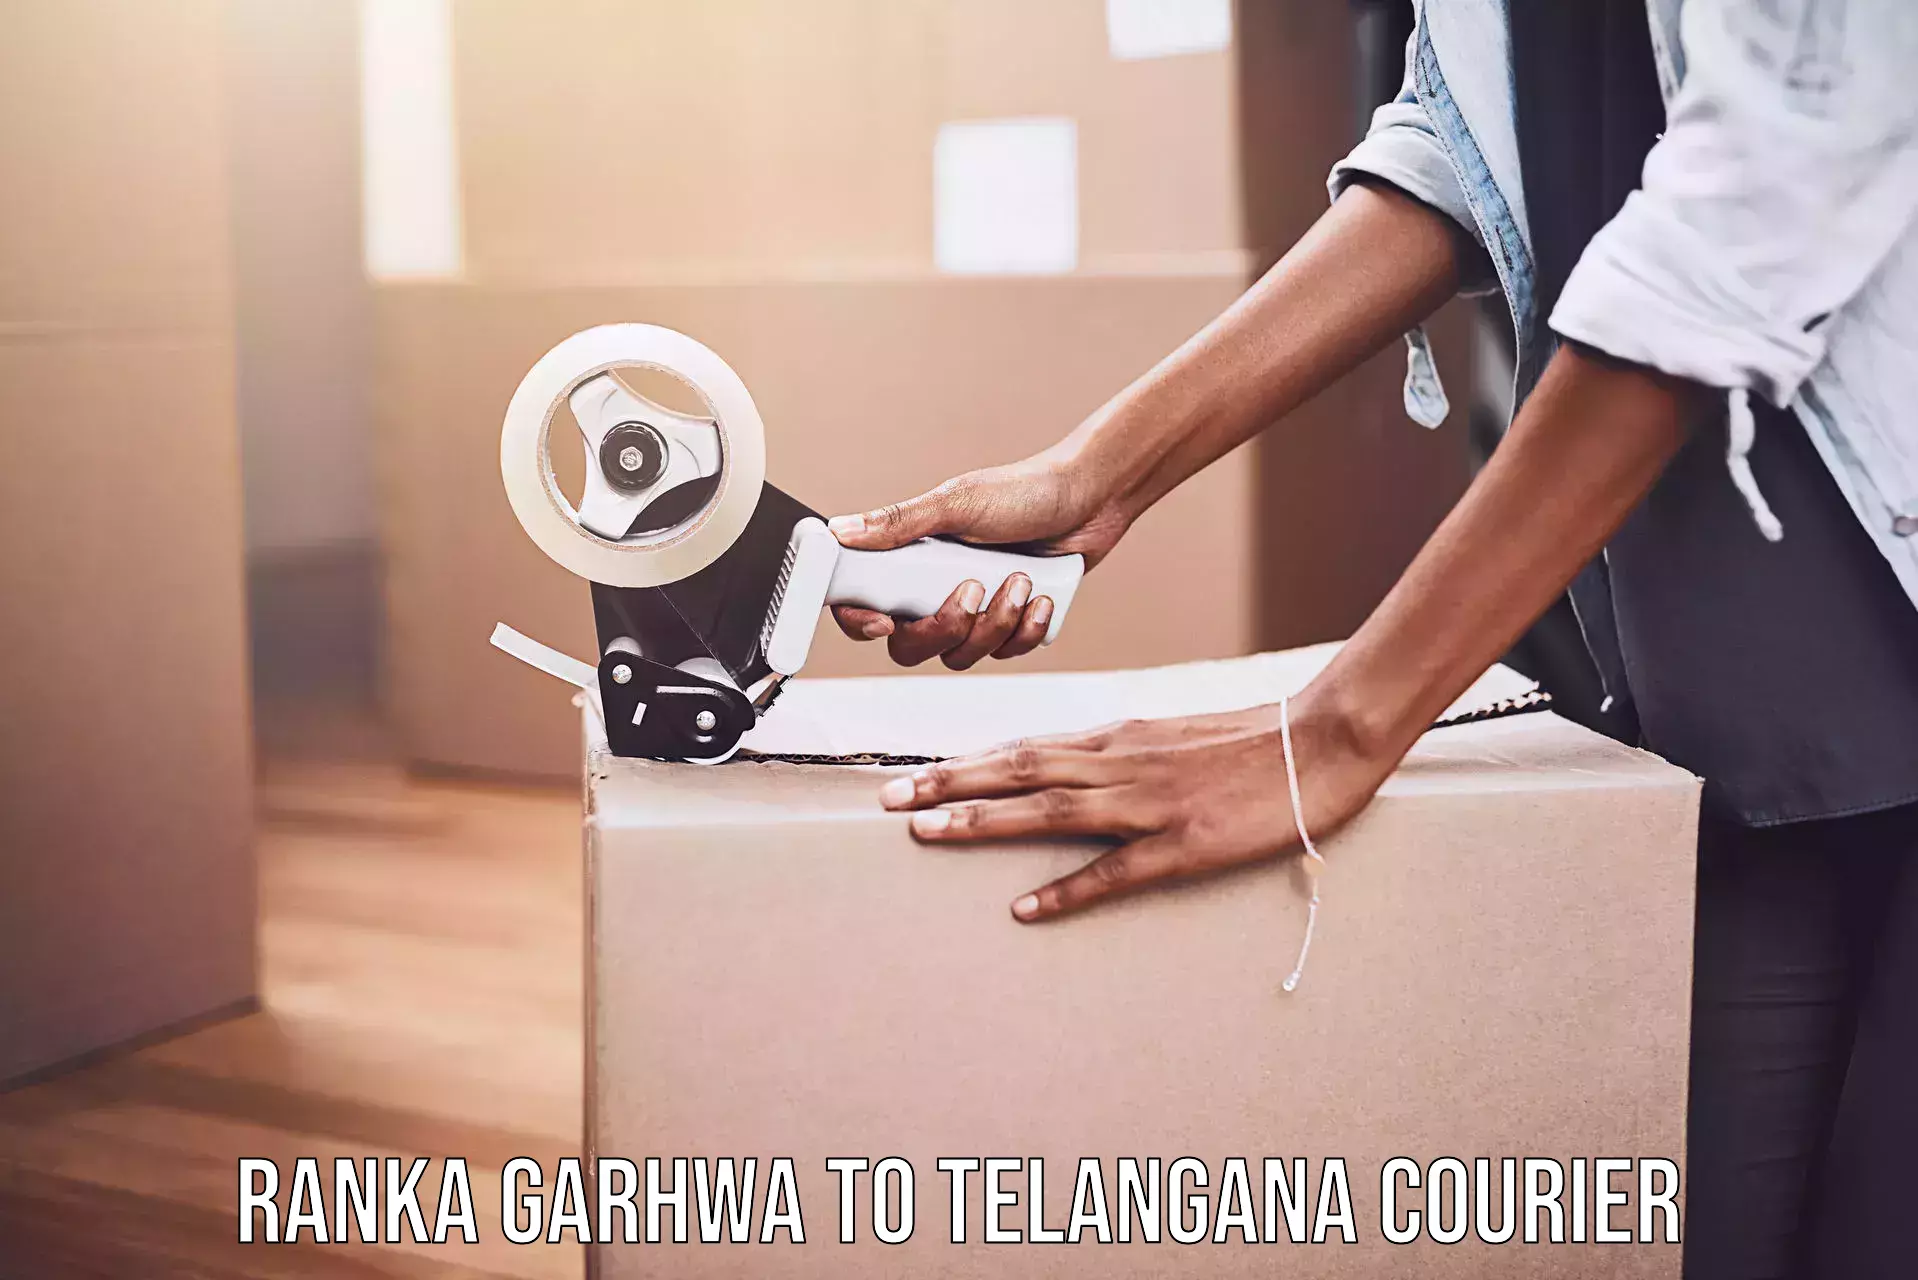 Efficient order fulfillment Ranka Garhwa to Mudigonda